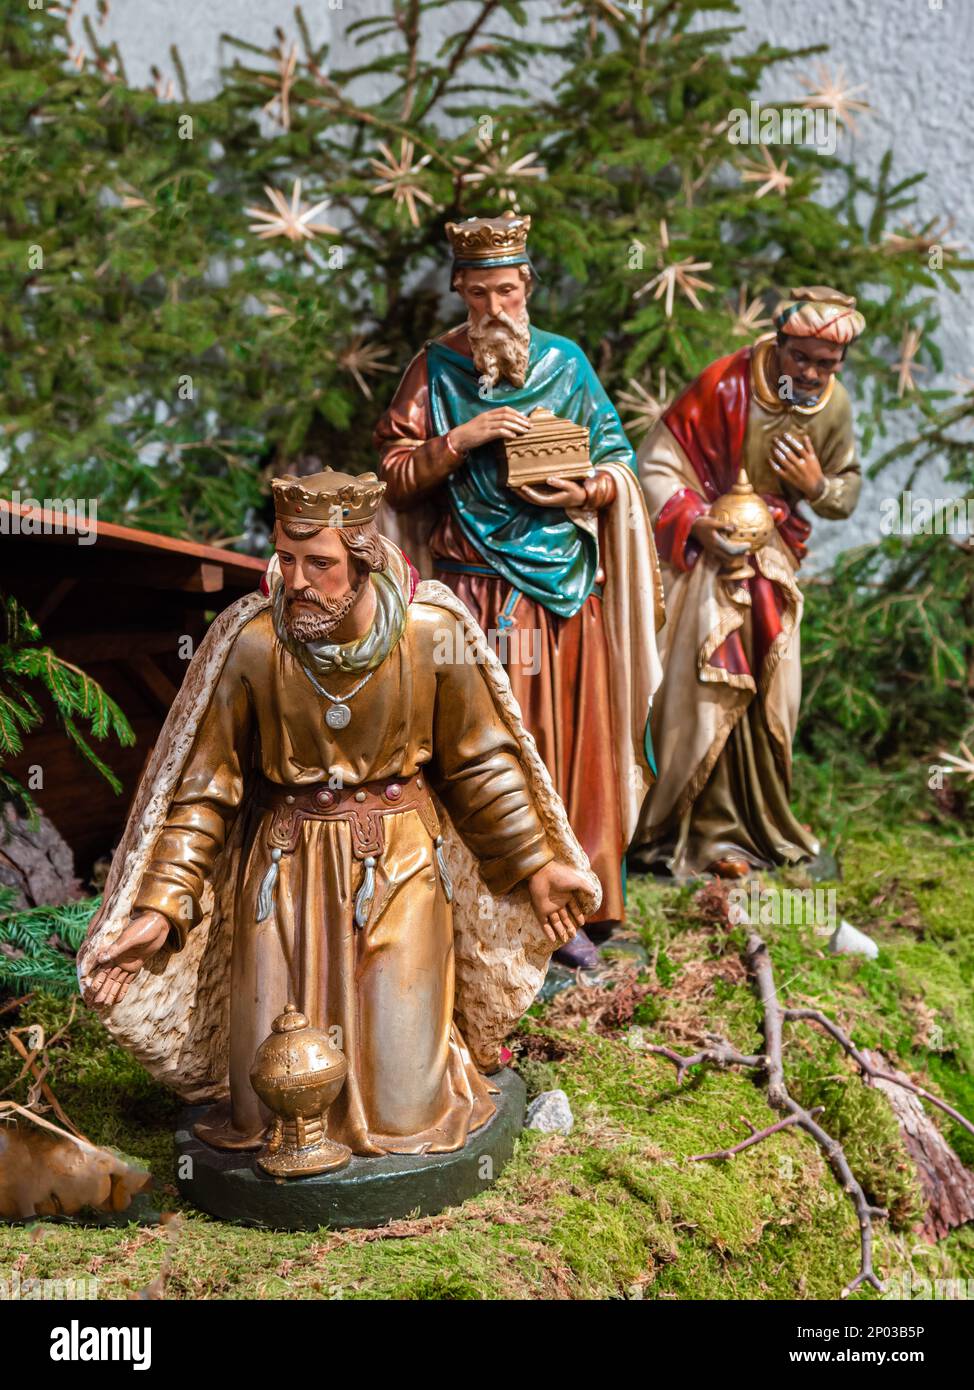 Vohrenbach, Allemagne - 16 janvier 2022: Les trois rois saints viennent avec des cadeaux pour visiter le nouveau-né Jésus à Betlehem Banque D'Images